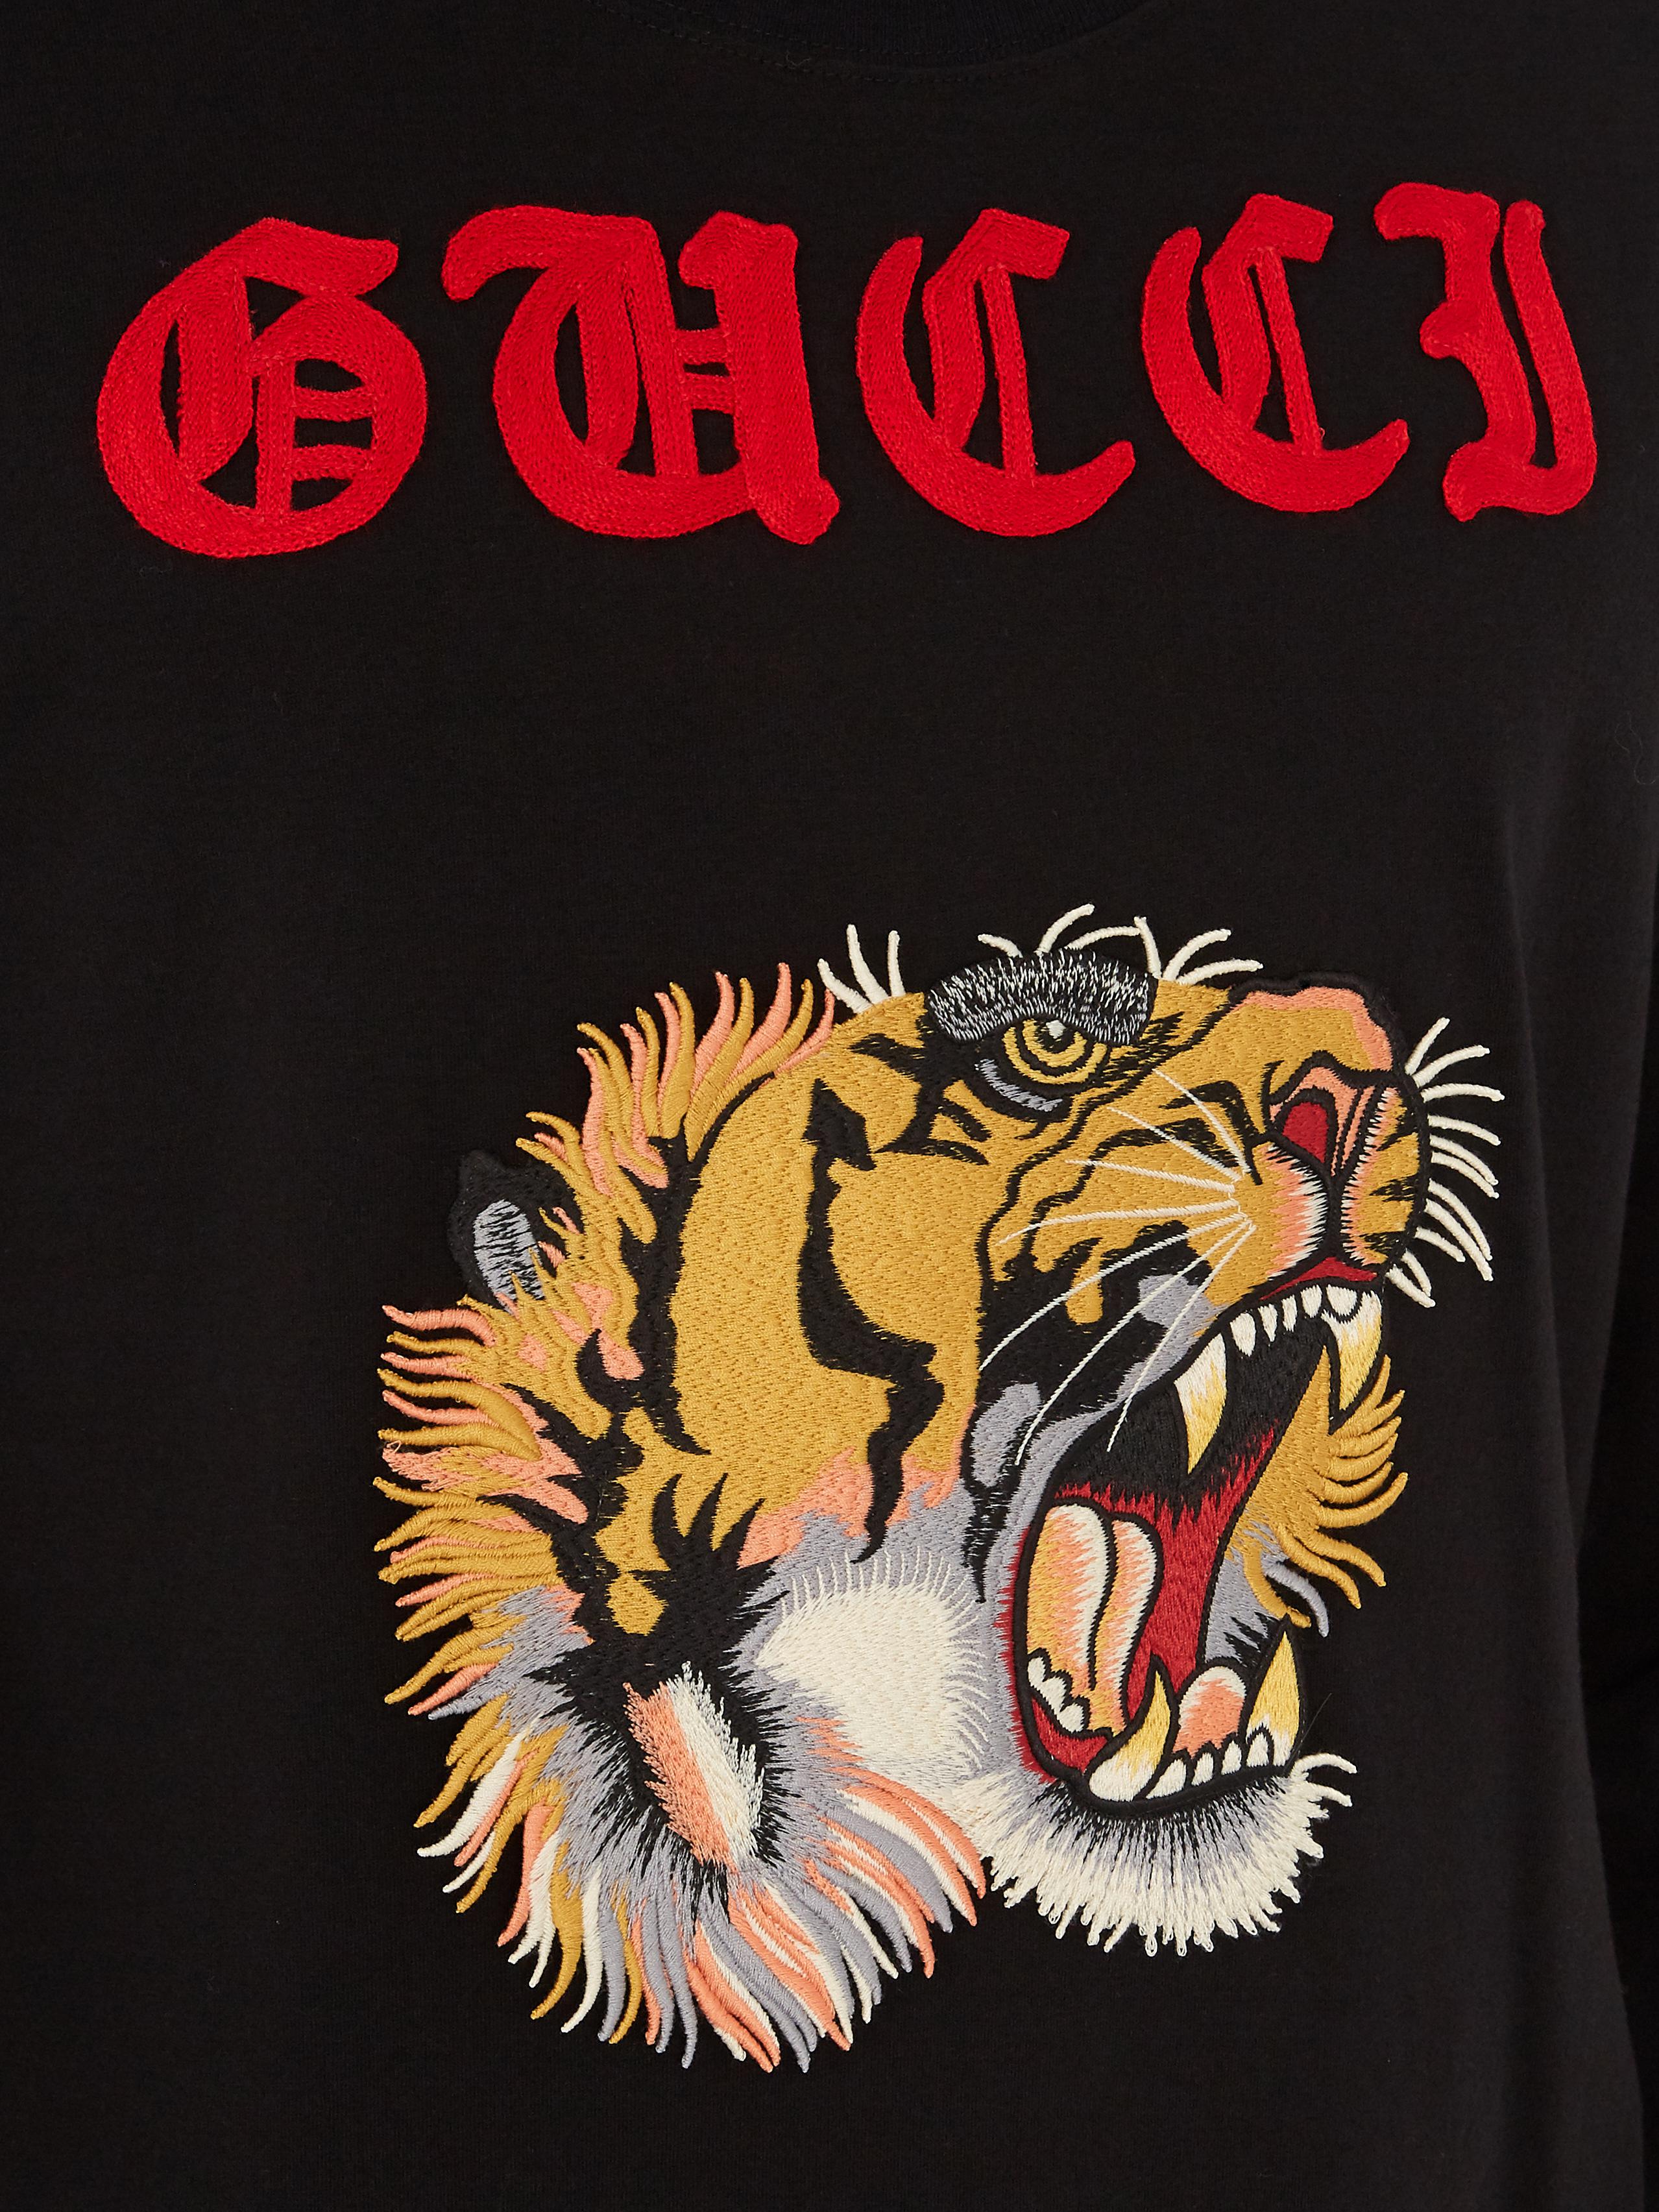 gucci tiger shirt black, OFF 73%,www 